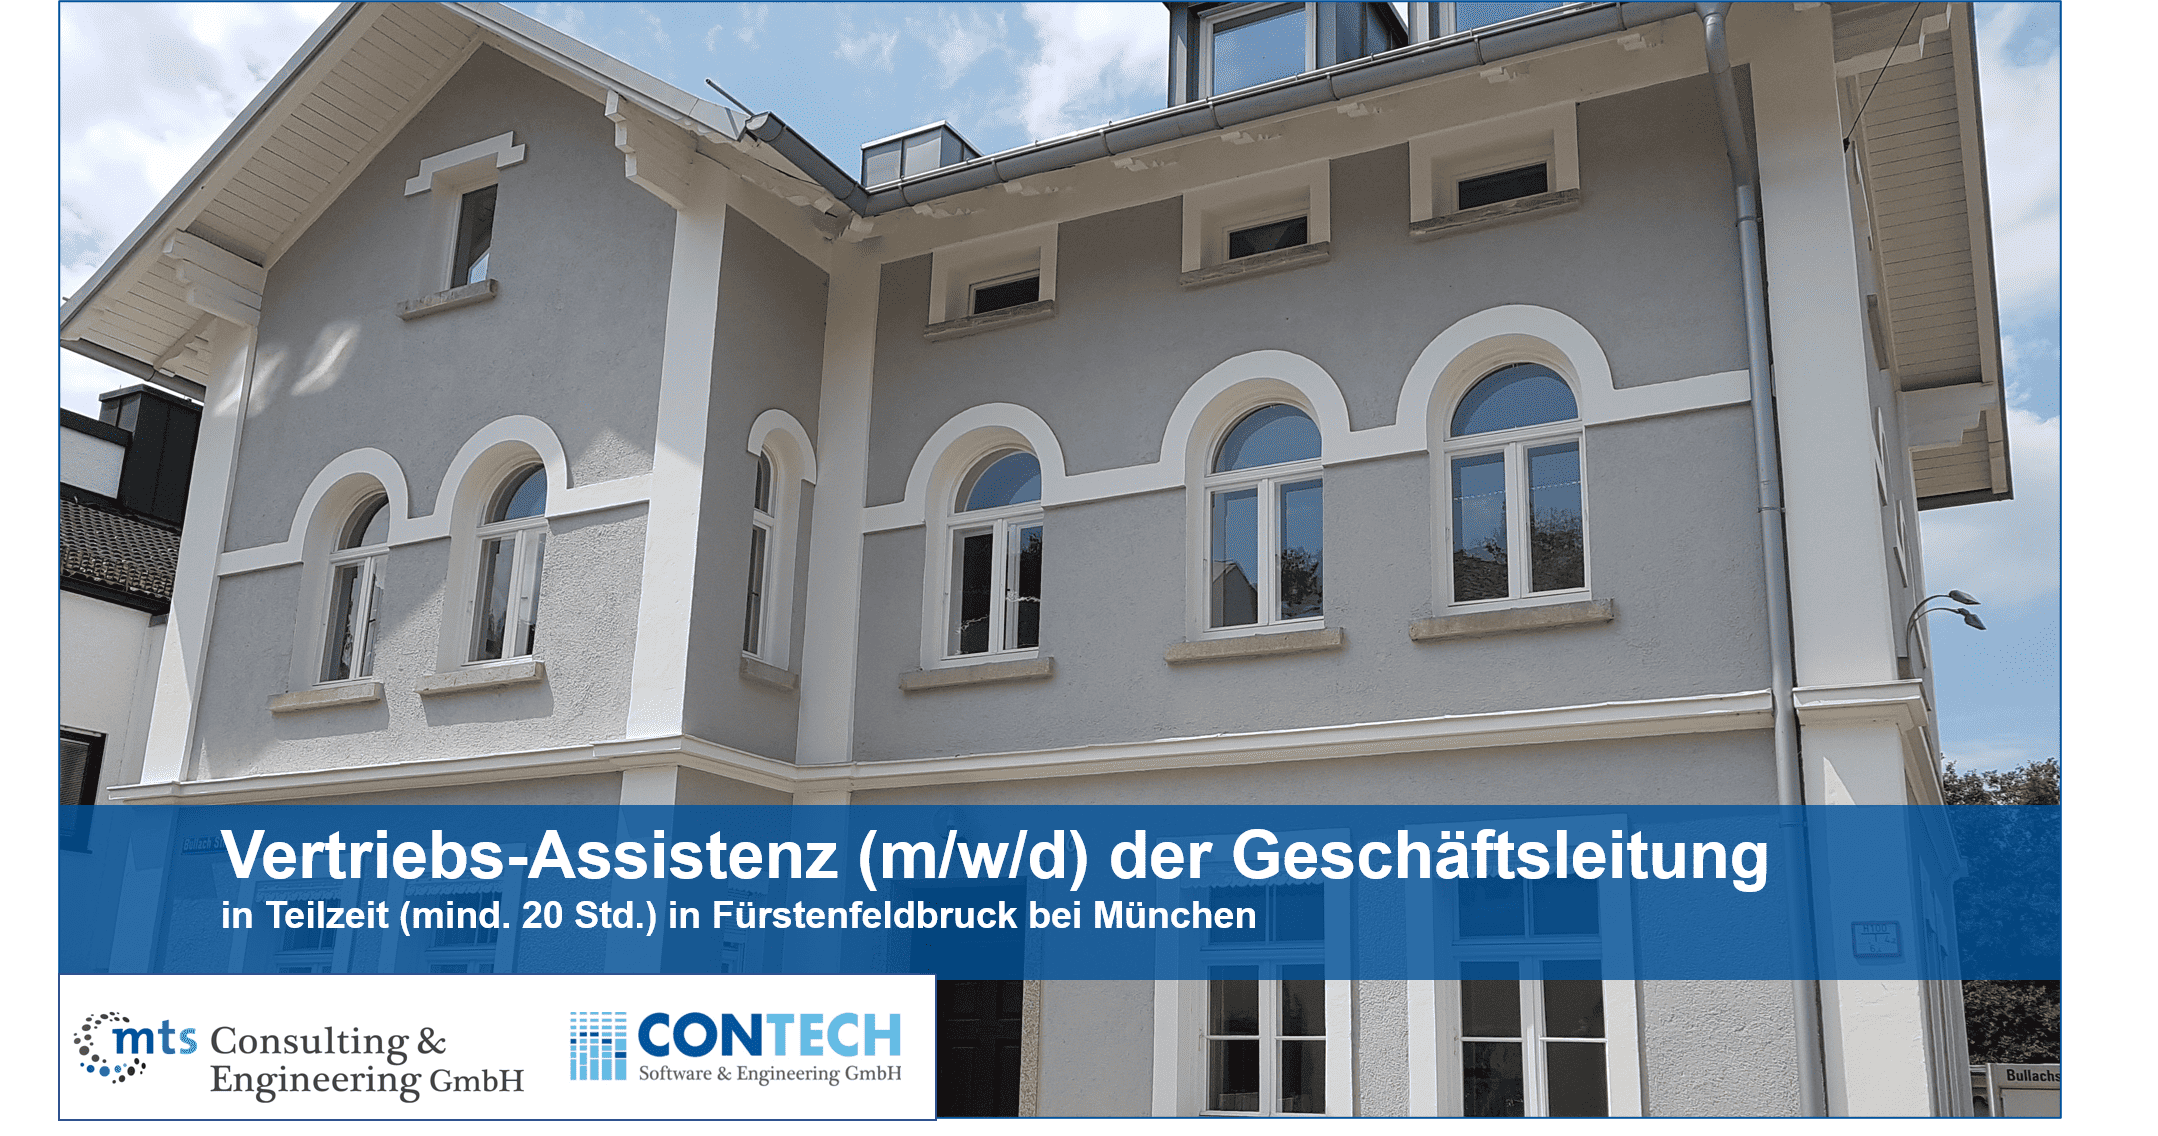 Vertriebs-Assistenz (m/w/d) der Geschäftsleitung in Teilzeit in Fürstenfeldbruck